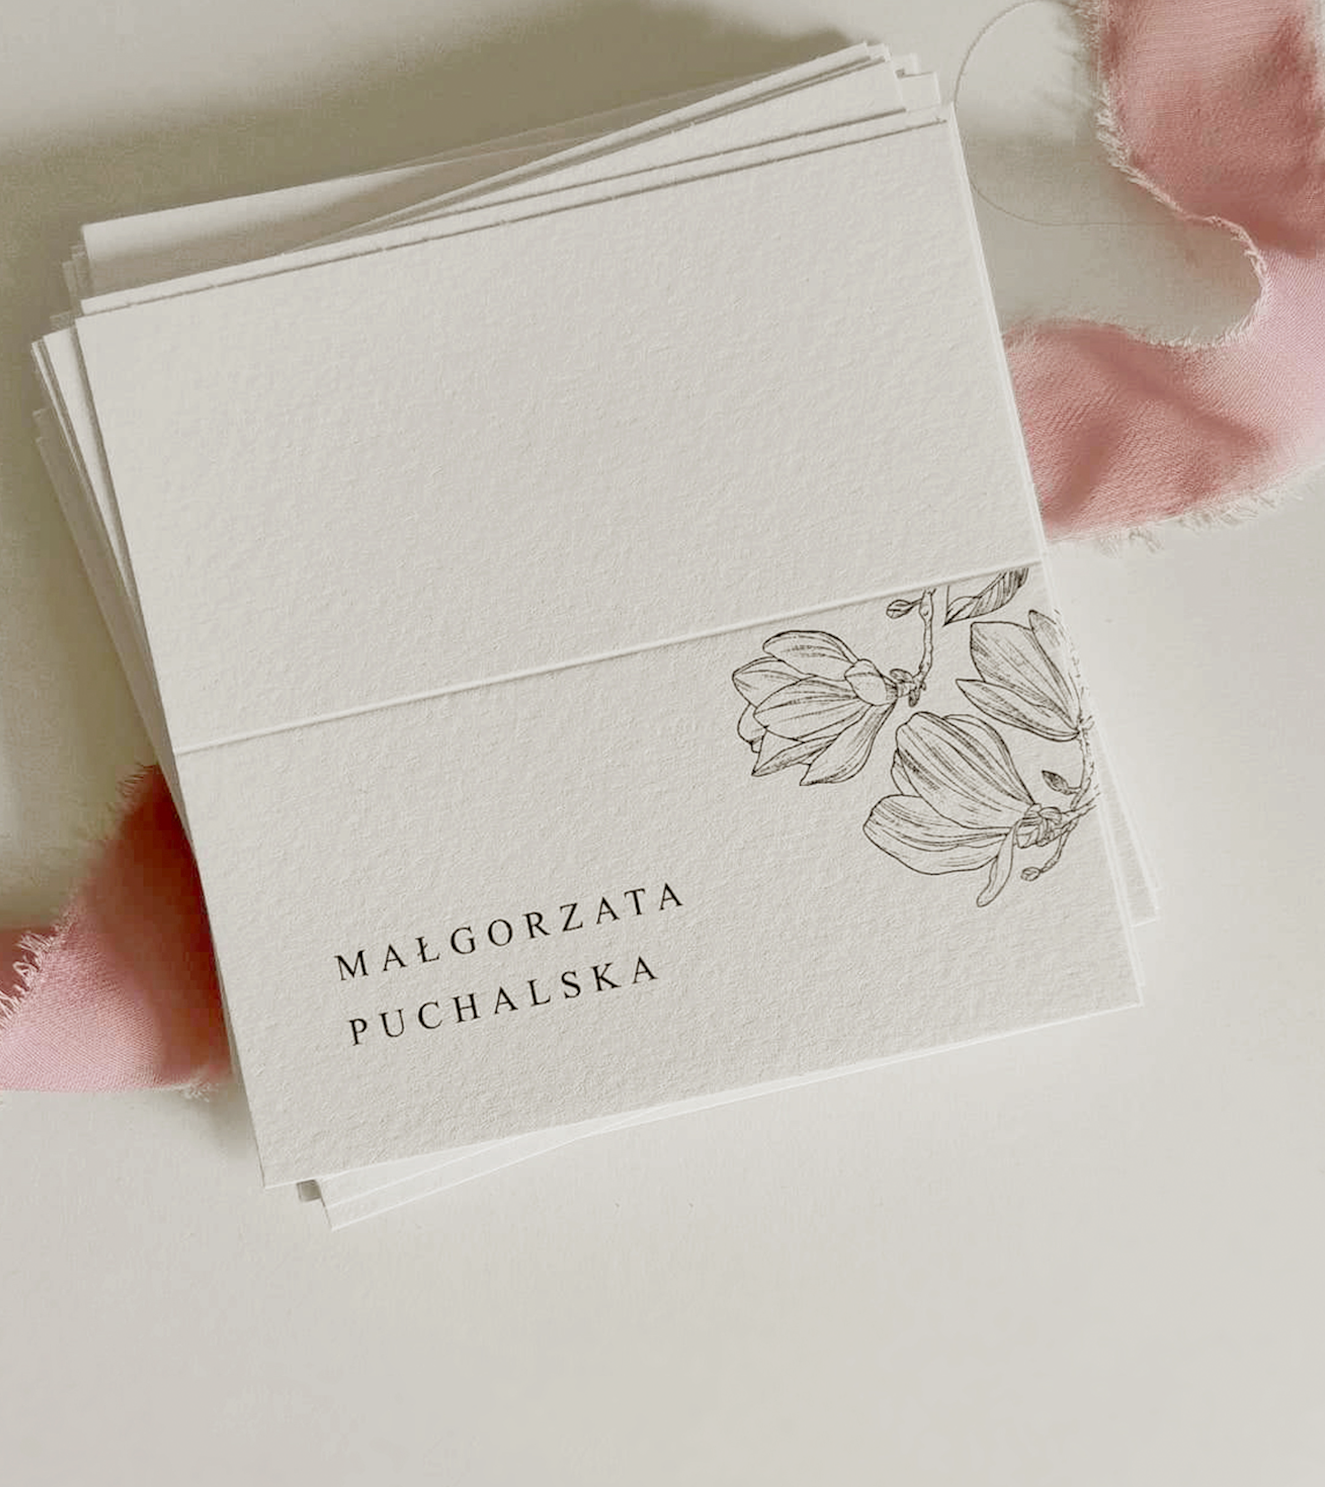 Minimalistyczne, delikatne winietki na ślub, których motywem przewodnim są kwiaty - magnolia, w stylu line art.